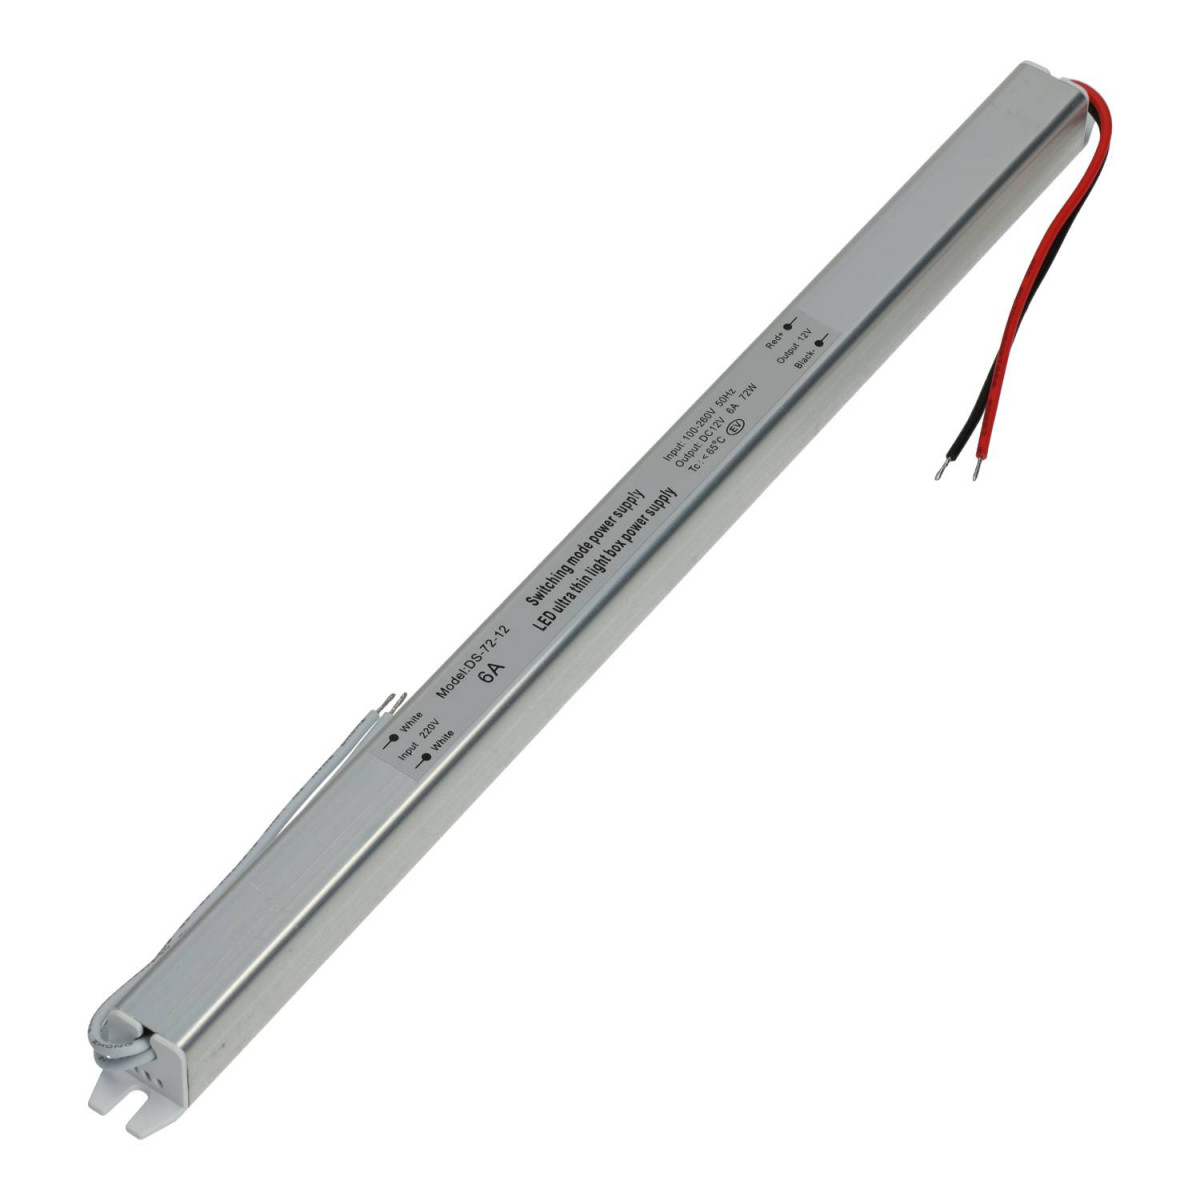 Ultra slim LED Power Supply - 72W 12V